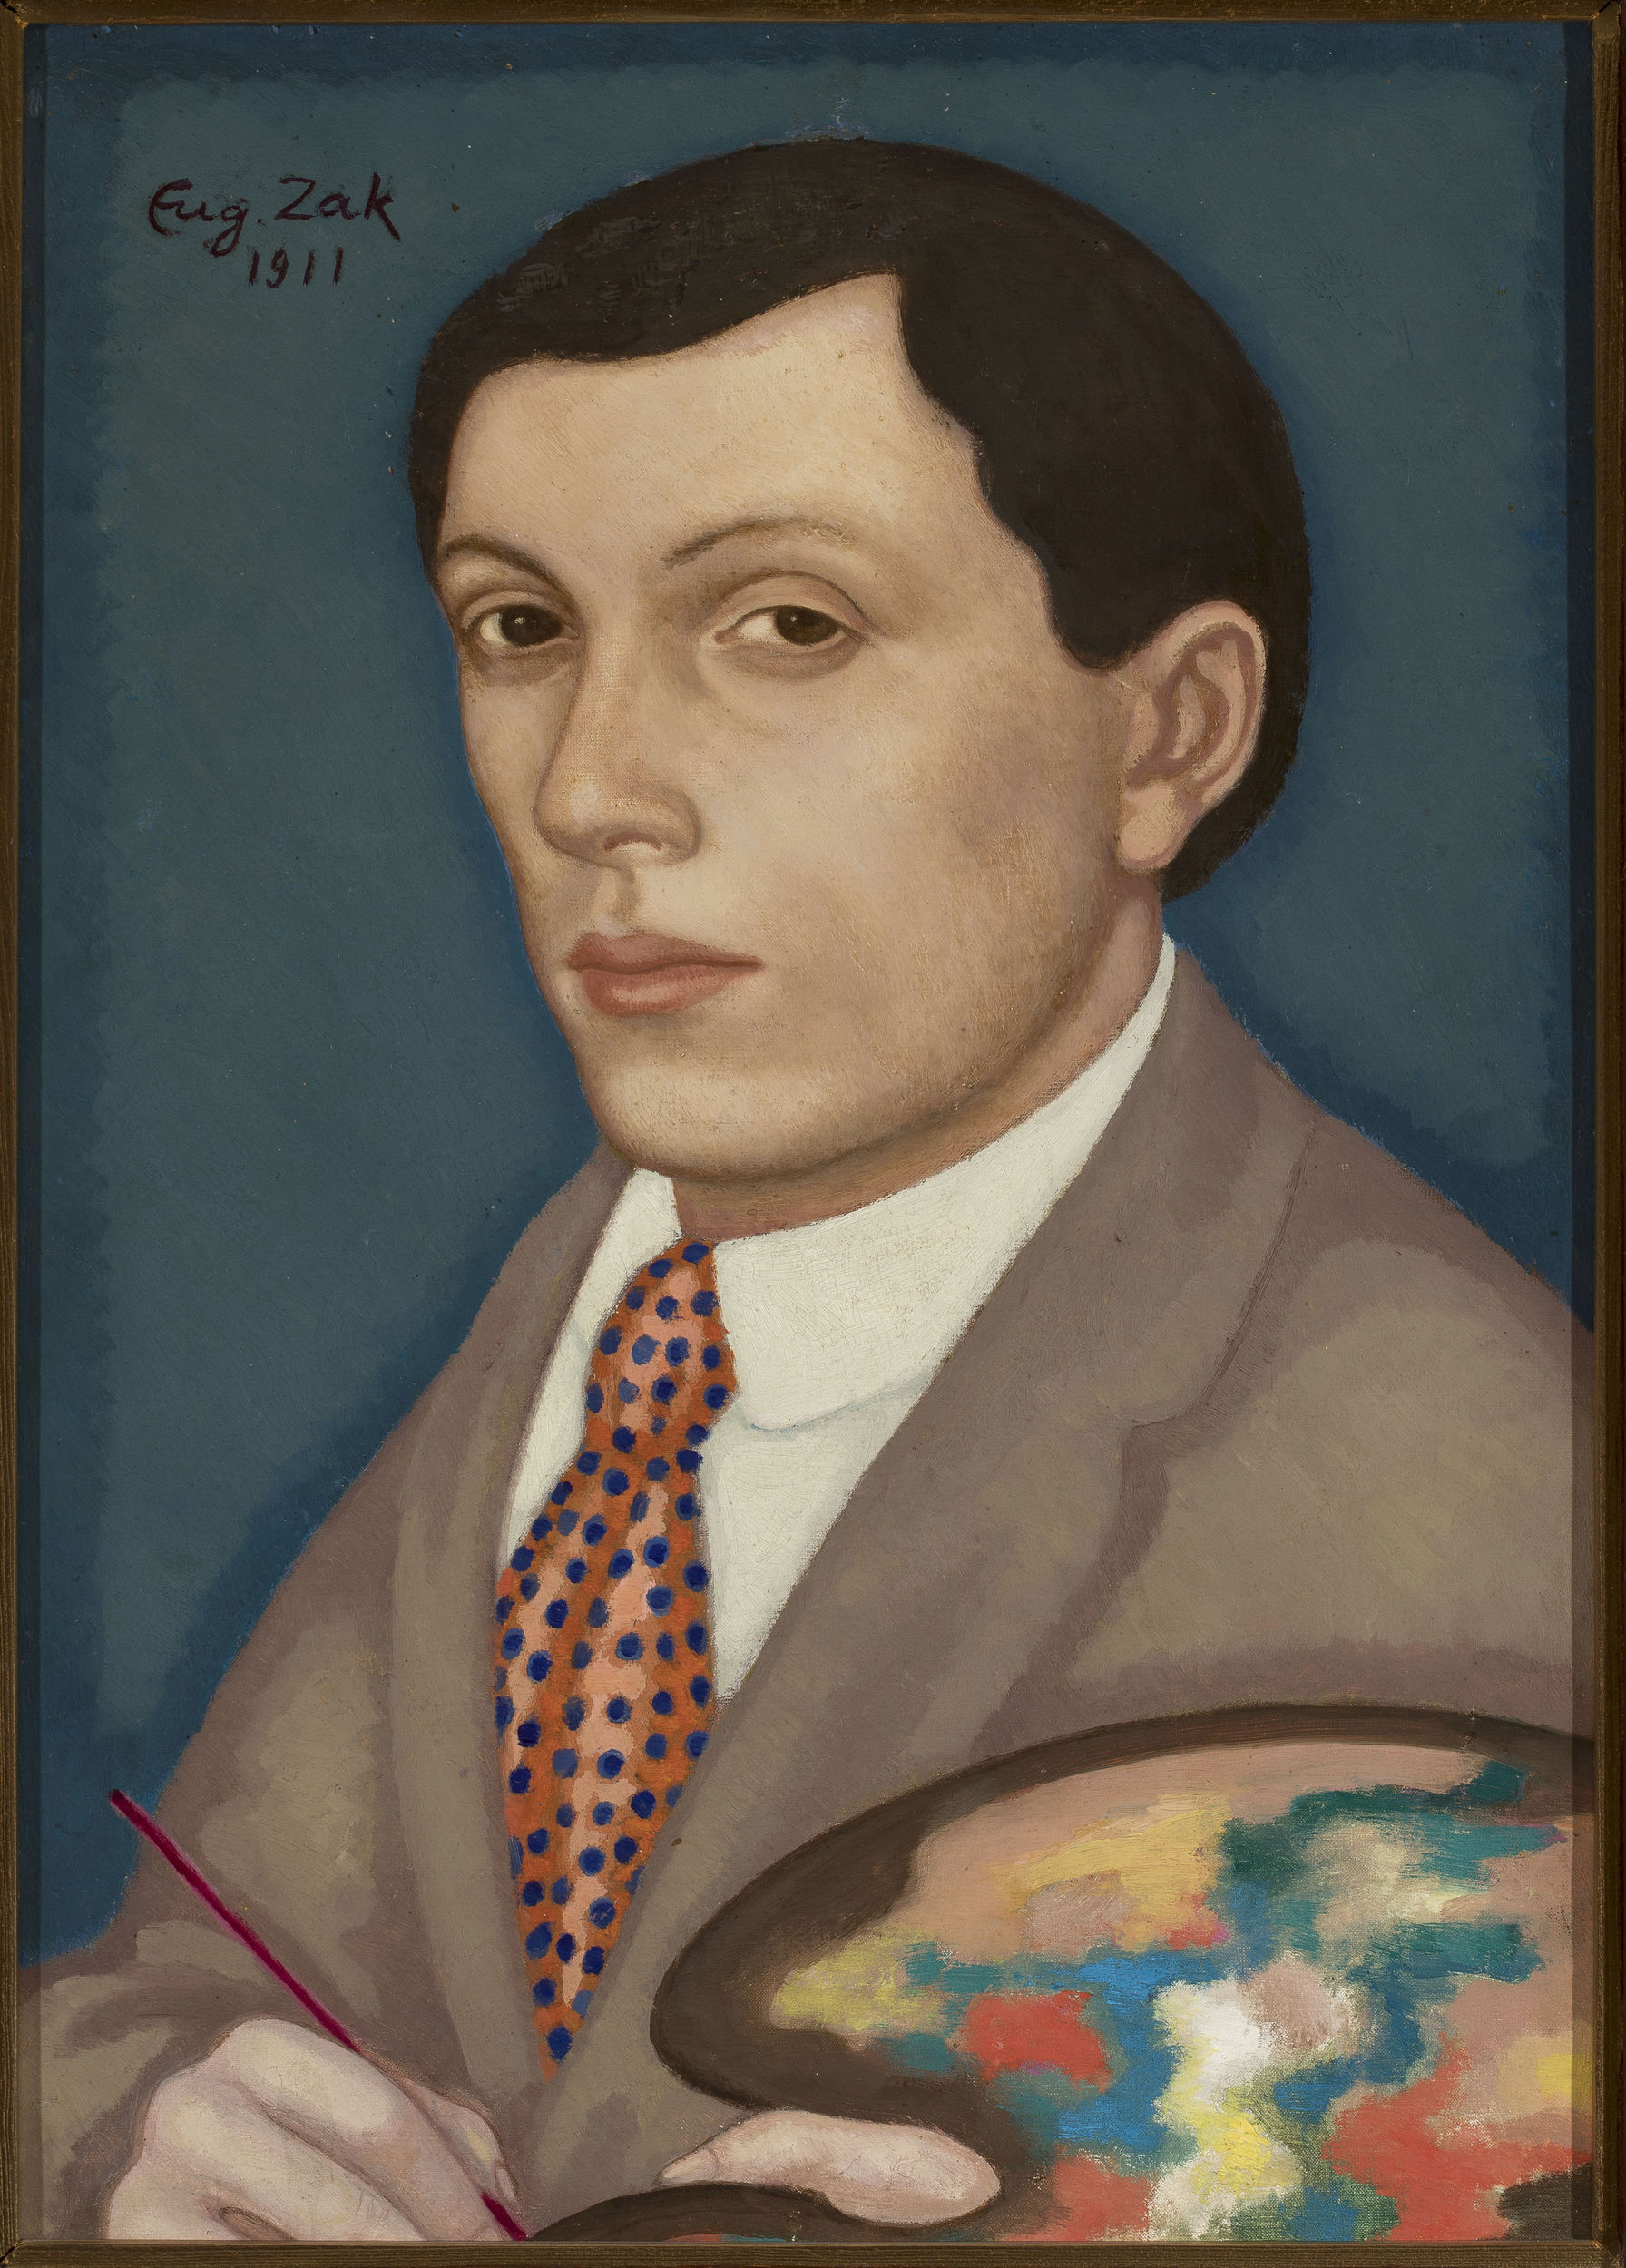 Eugeniusz Zak, Autoportret, 1911, Muzeum Narodowe w Warszawie, licencja PD, źródło: Cyfrowe MNW